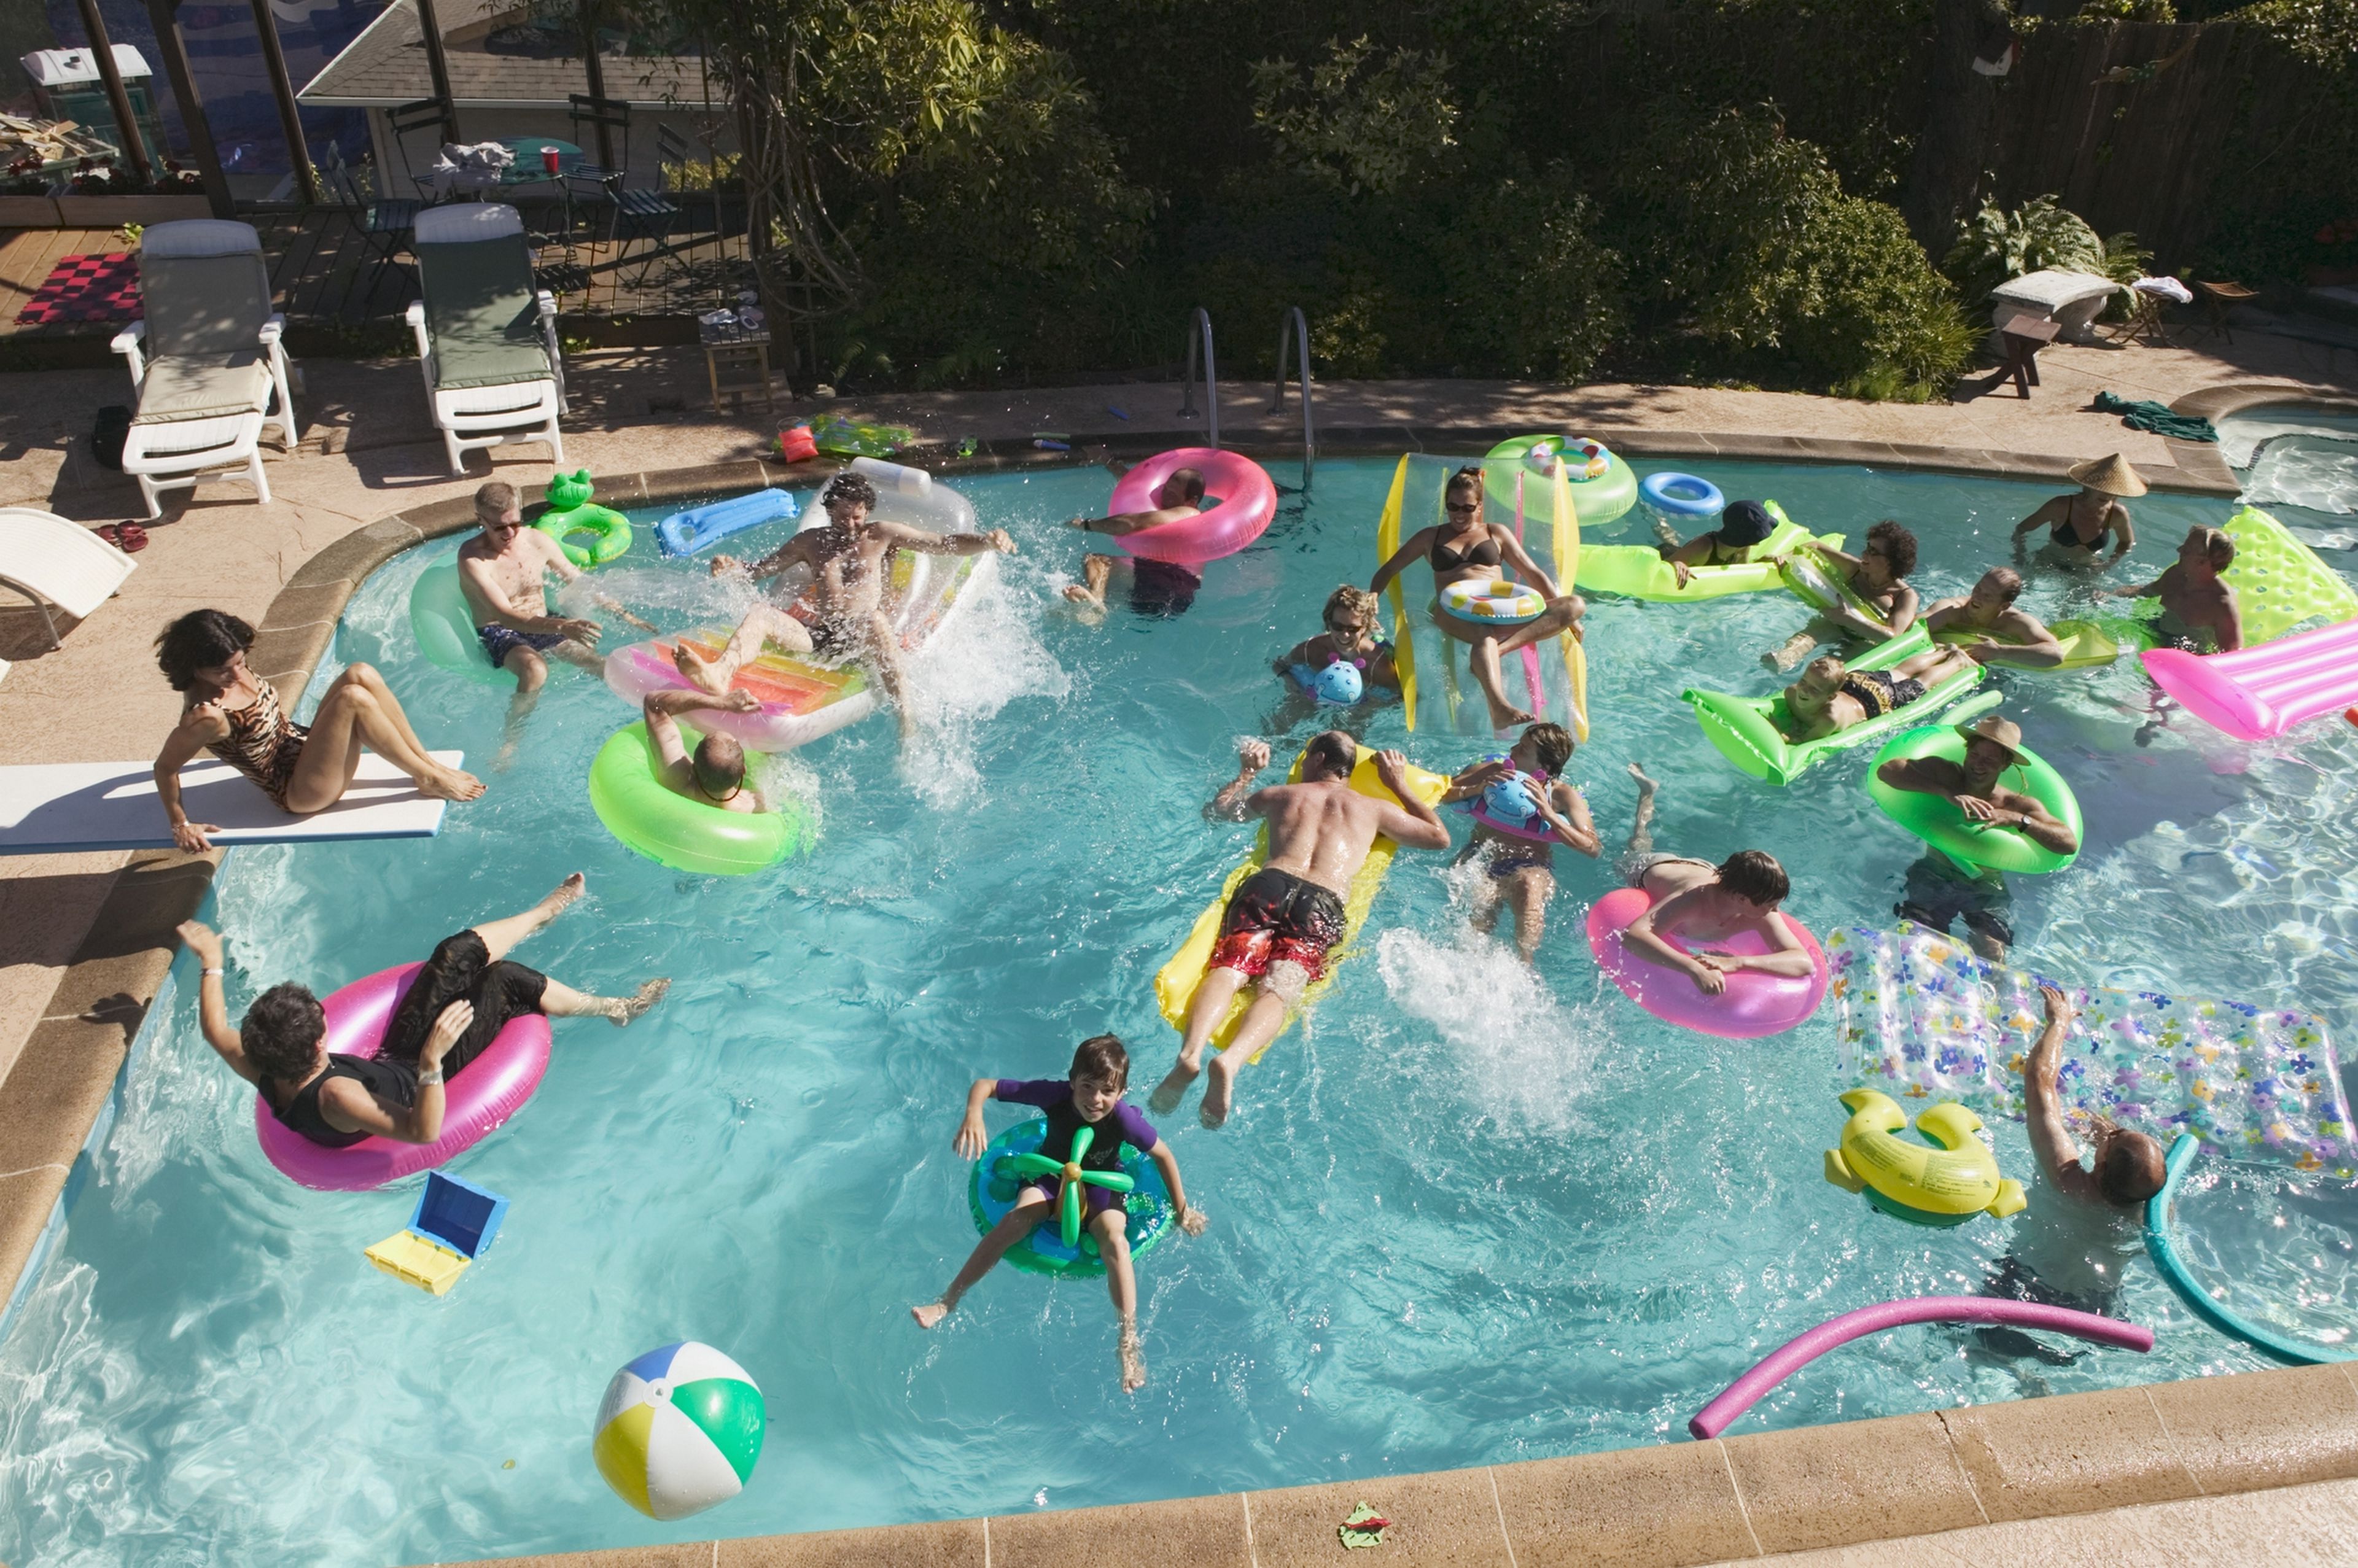 Swimply, el Airbnb para alquilar piscinas, esta causando el caos en los vecindarios